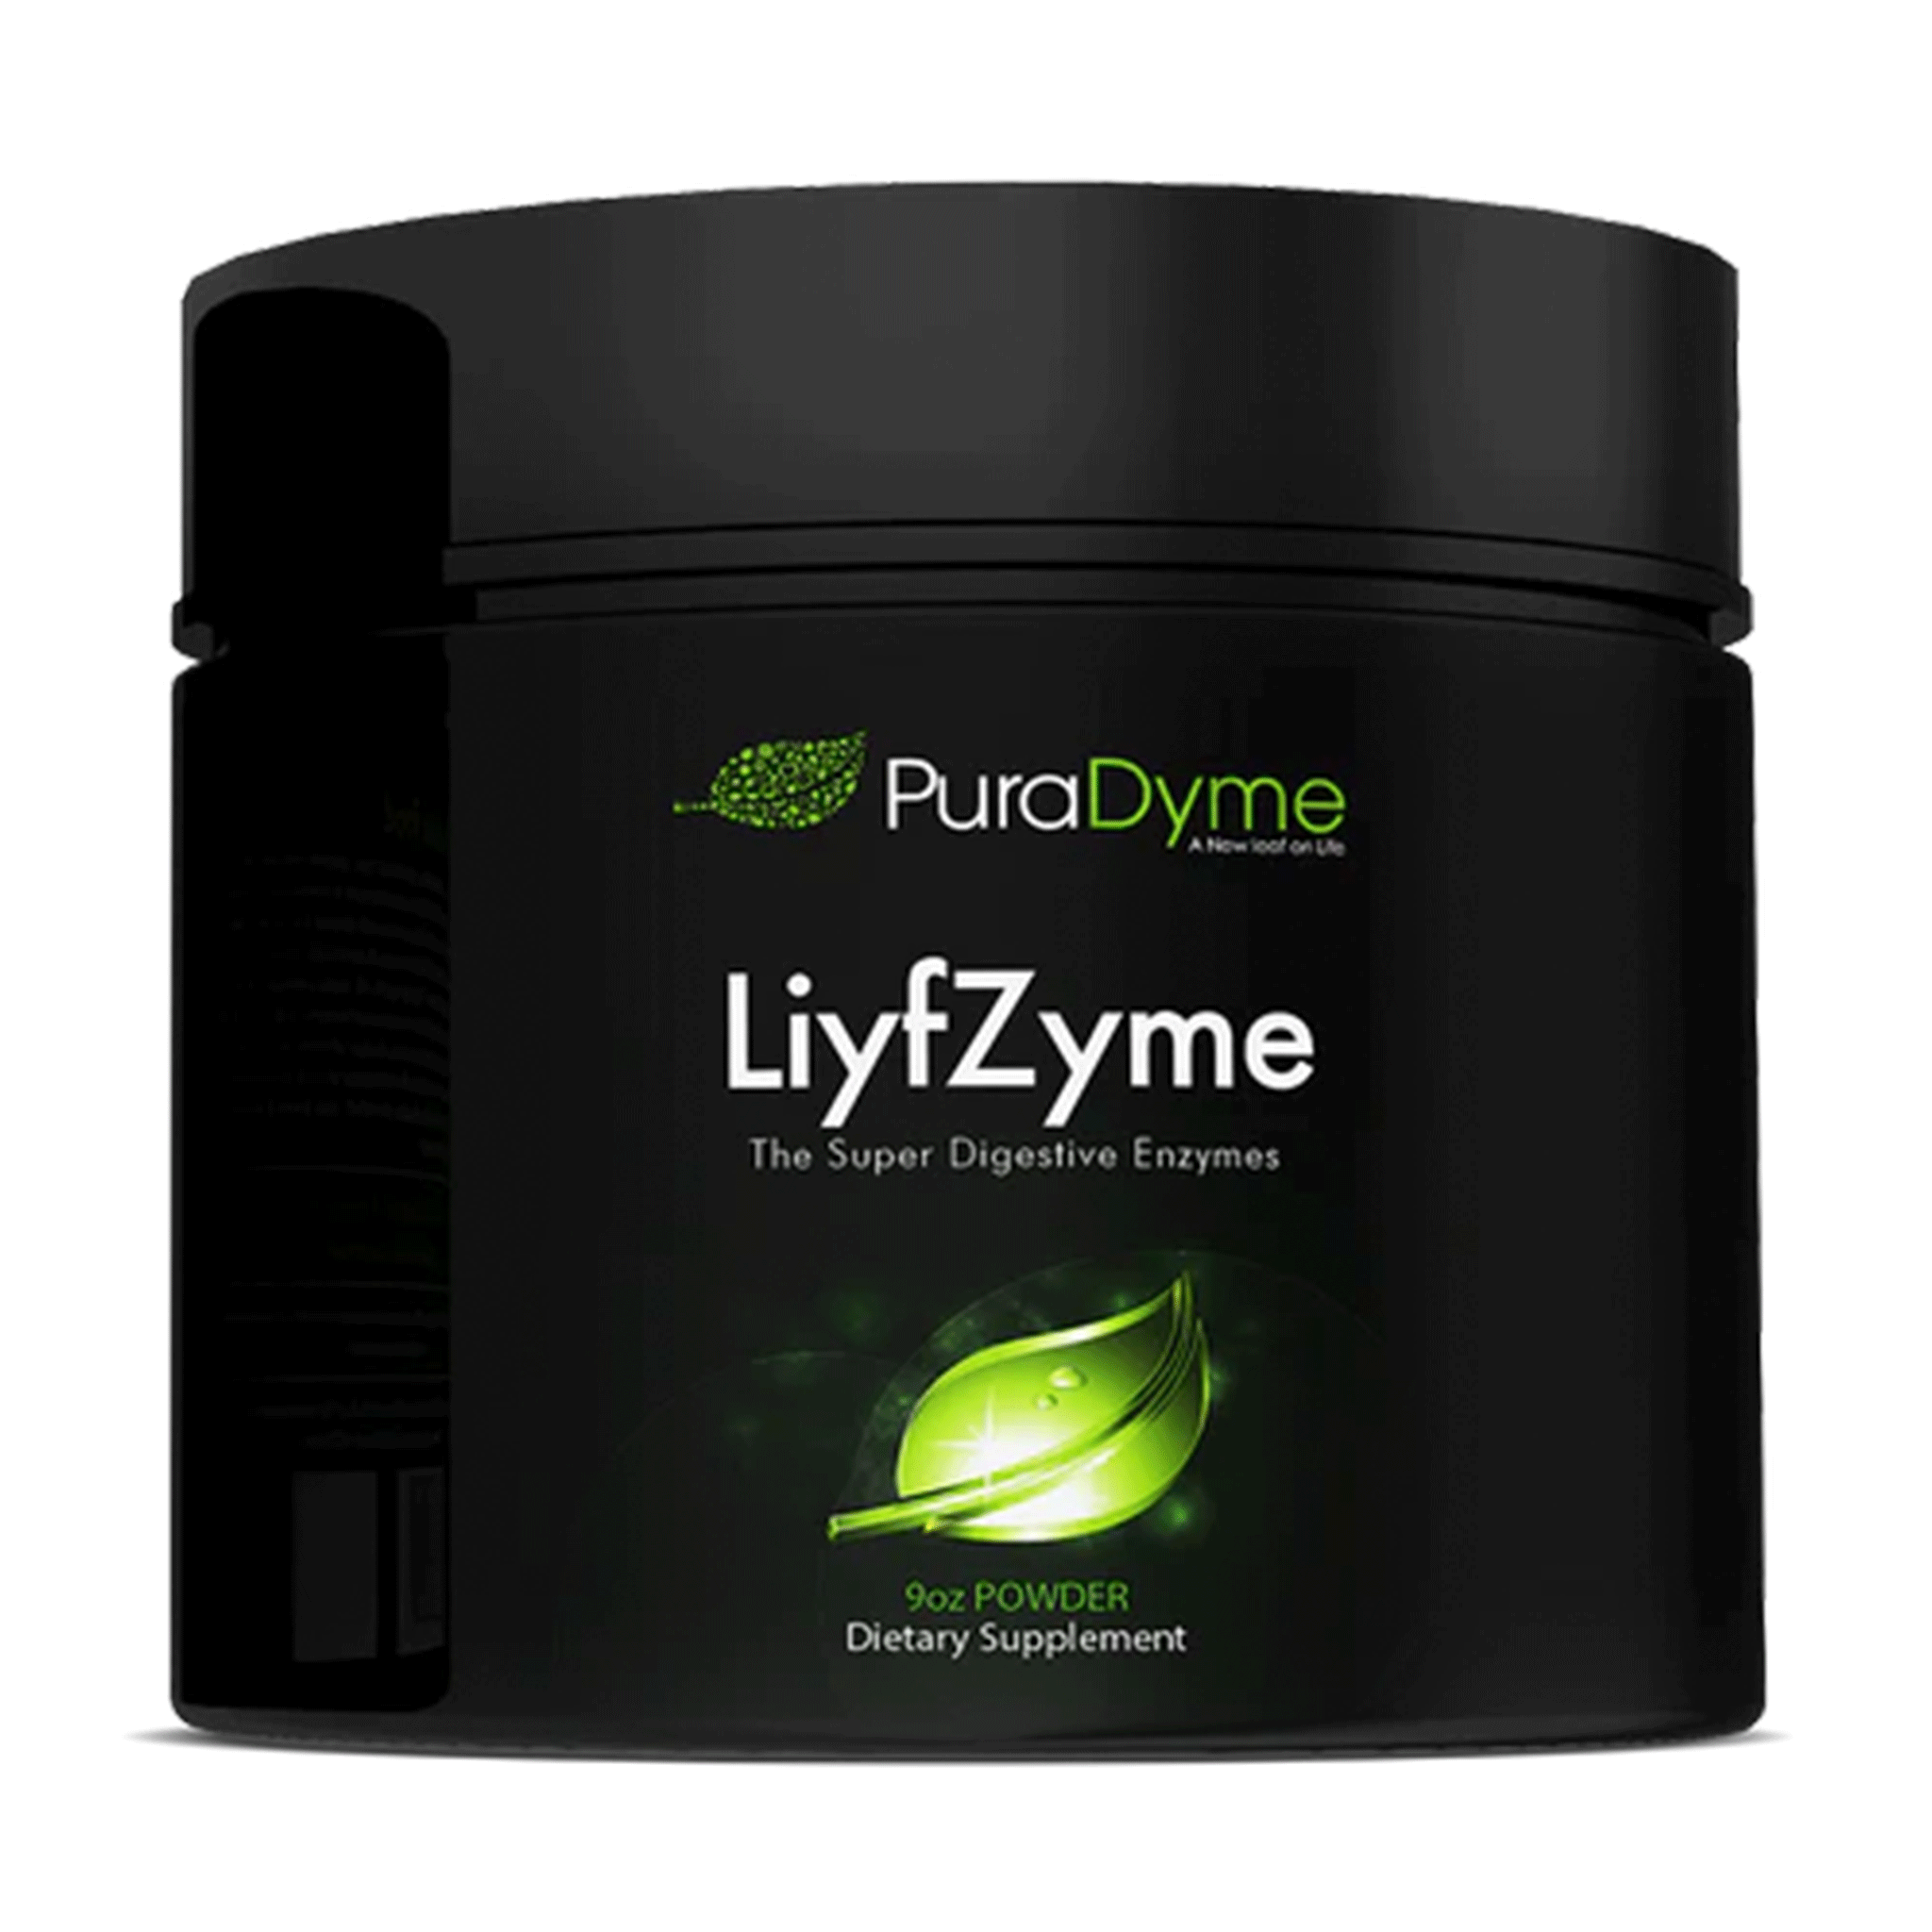 PuraDyme Liyfzyme Super Digestive Enzymes (9 oz Powder)